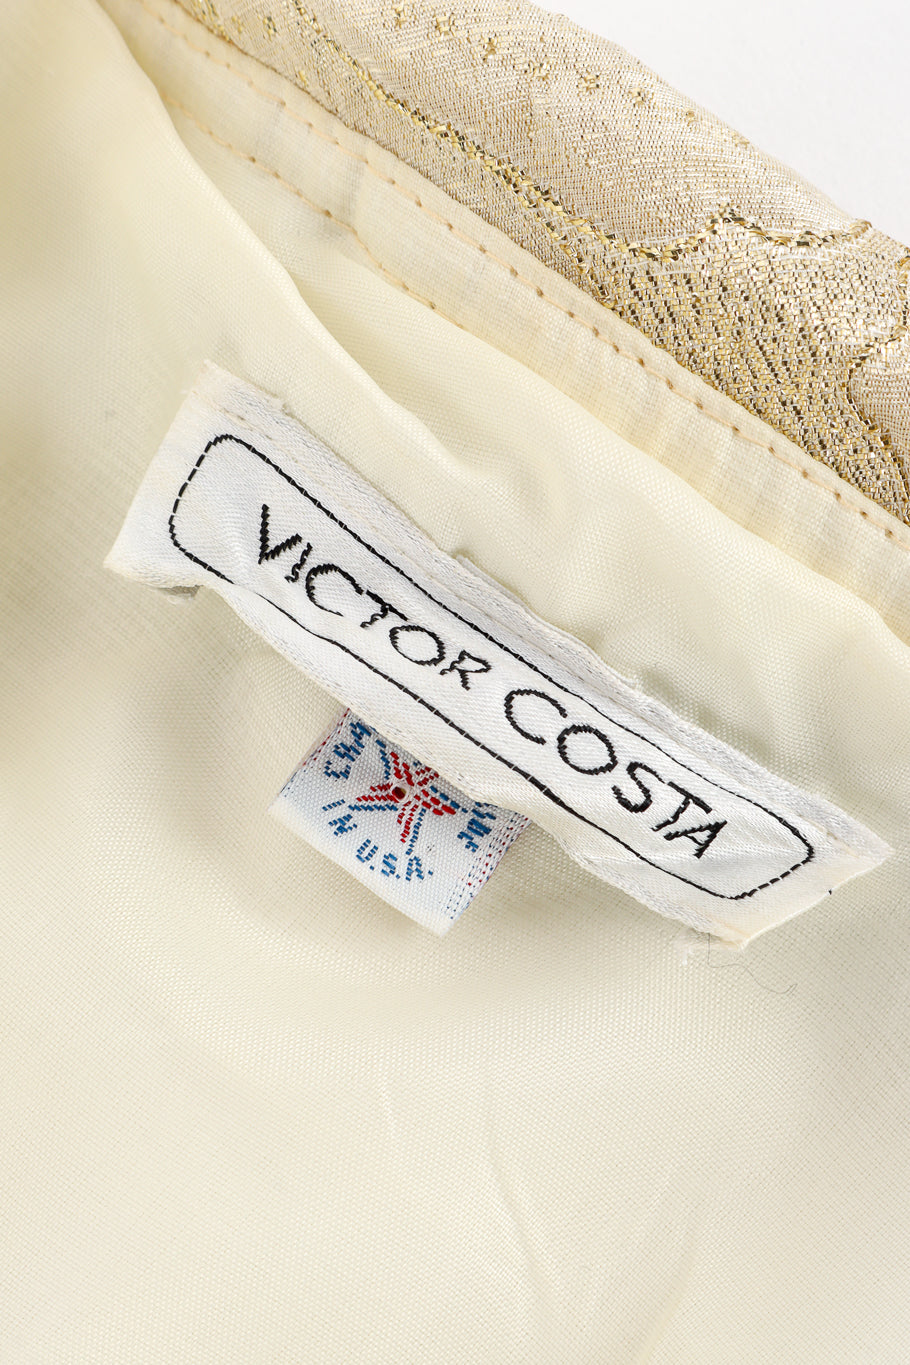 Vintage Victor Costa Strapless Floral Lamé Gown signature label @recess la